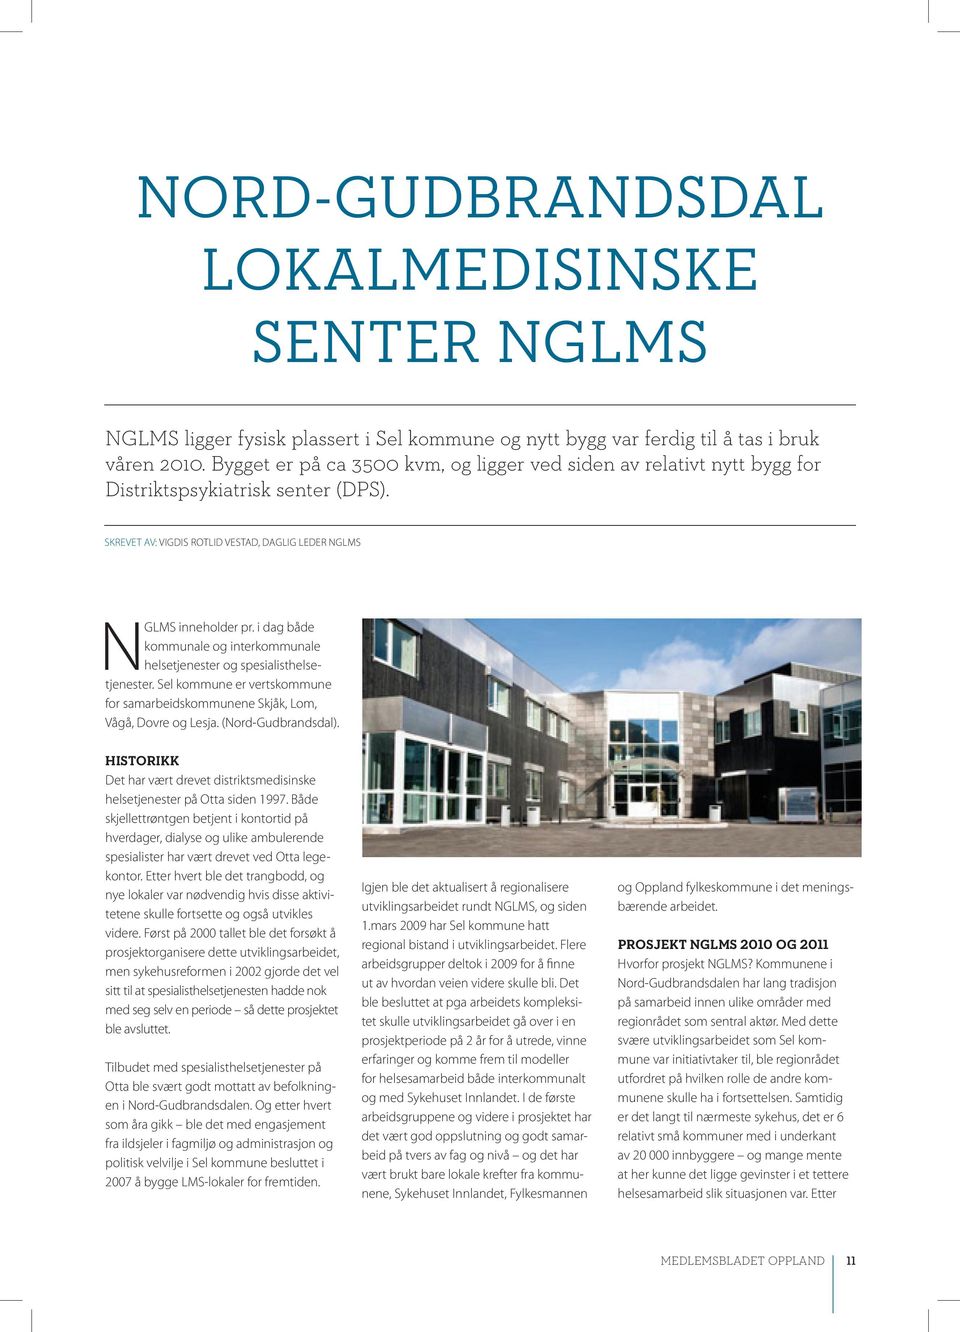 i dag både kommunale og interkommunale helsetjenester og spesialisthelsetjenester. Sel kommune er vertskommune for samarbeidskommunene Skjåk, Lom, Vågå, Dovre og Lesja. (Nord-Gudbrandsdal).